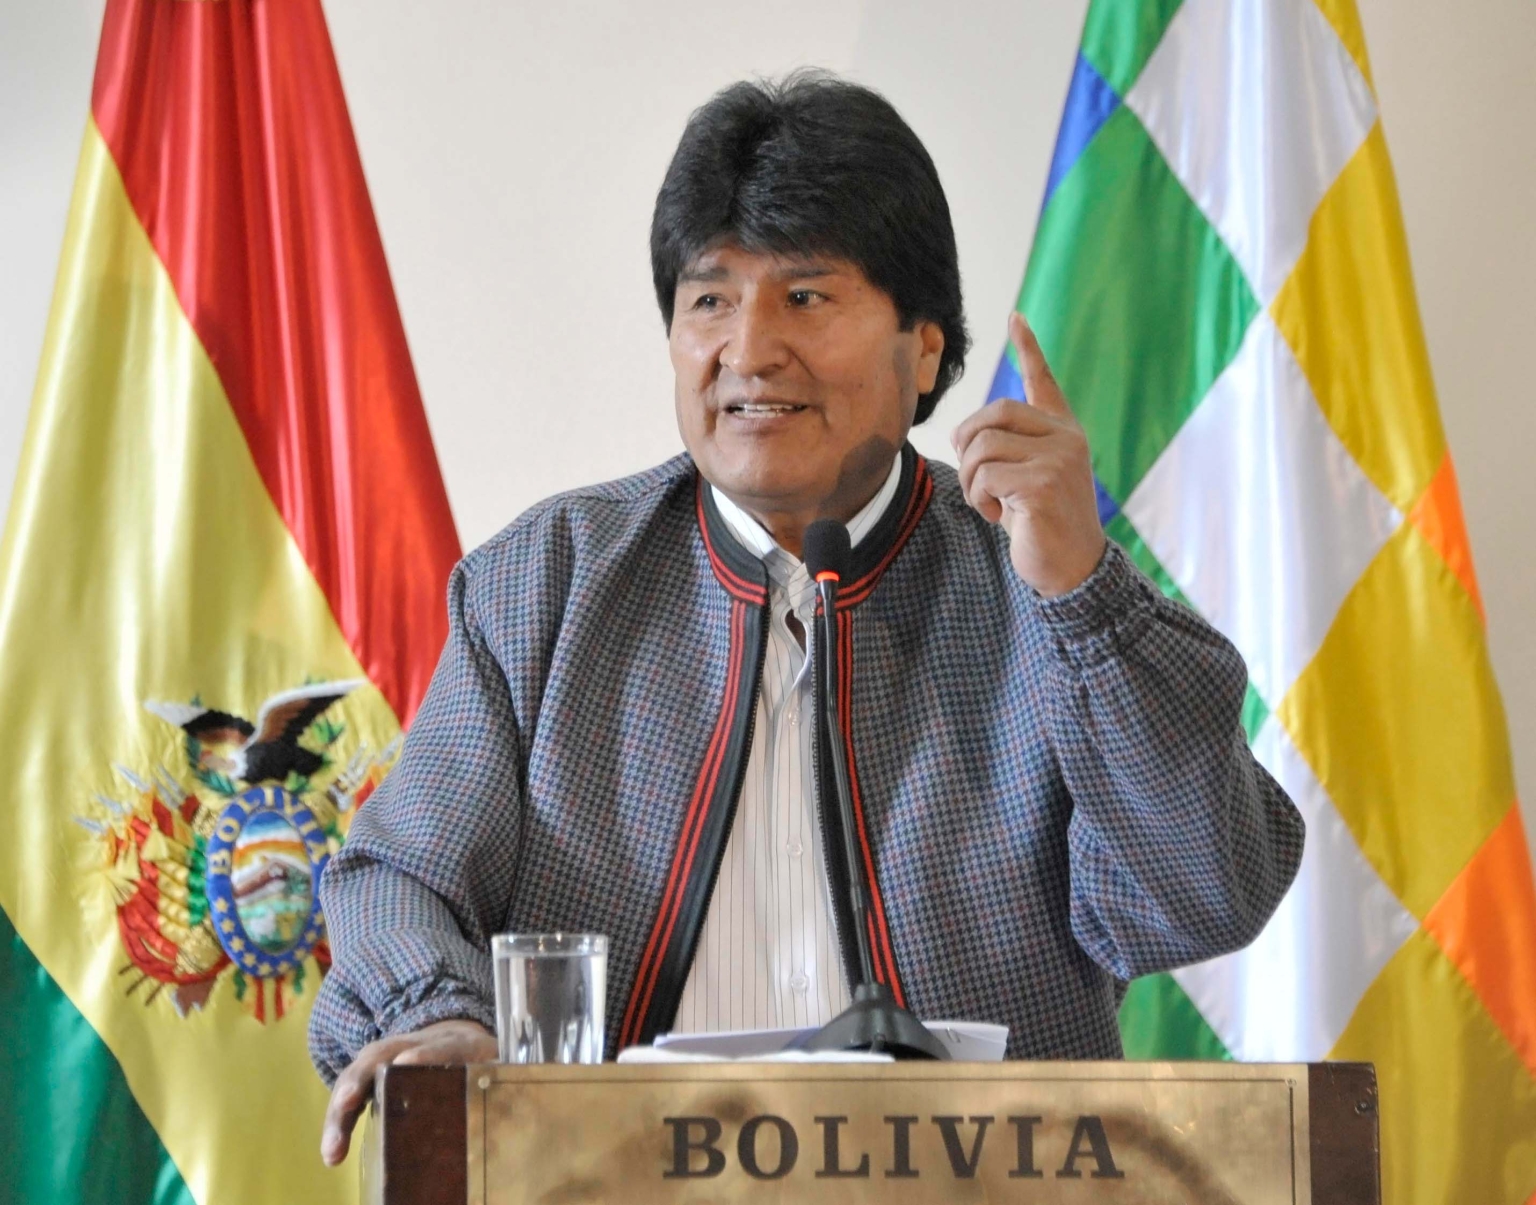 «Der Aufbau und die Umsetzung dieses Zentrums beschert unserem Land einen Quantensprung in den wissenschaftlichen und technologischen Fähigkeiten», erklärte Boliviens Präsident, Evo Morales, bei der Ankündigung eines neuen Forschungs- und Entwicklungszentrum für Kerntechnik in El Alto.